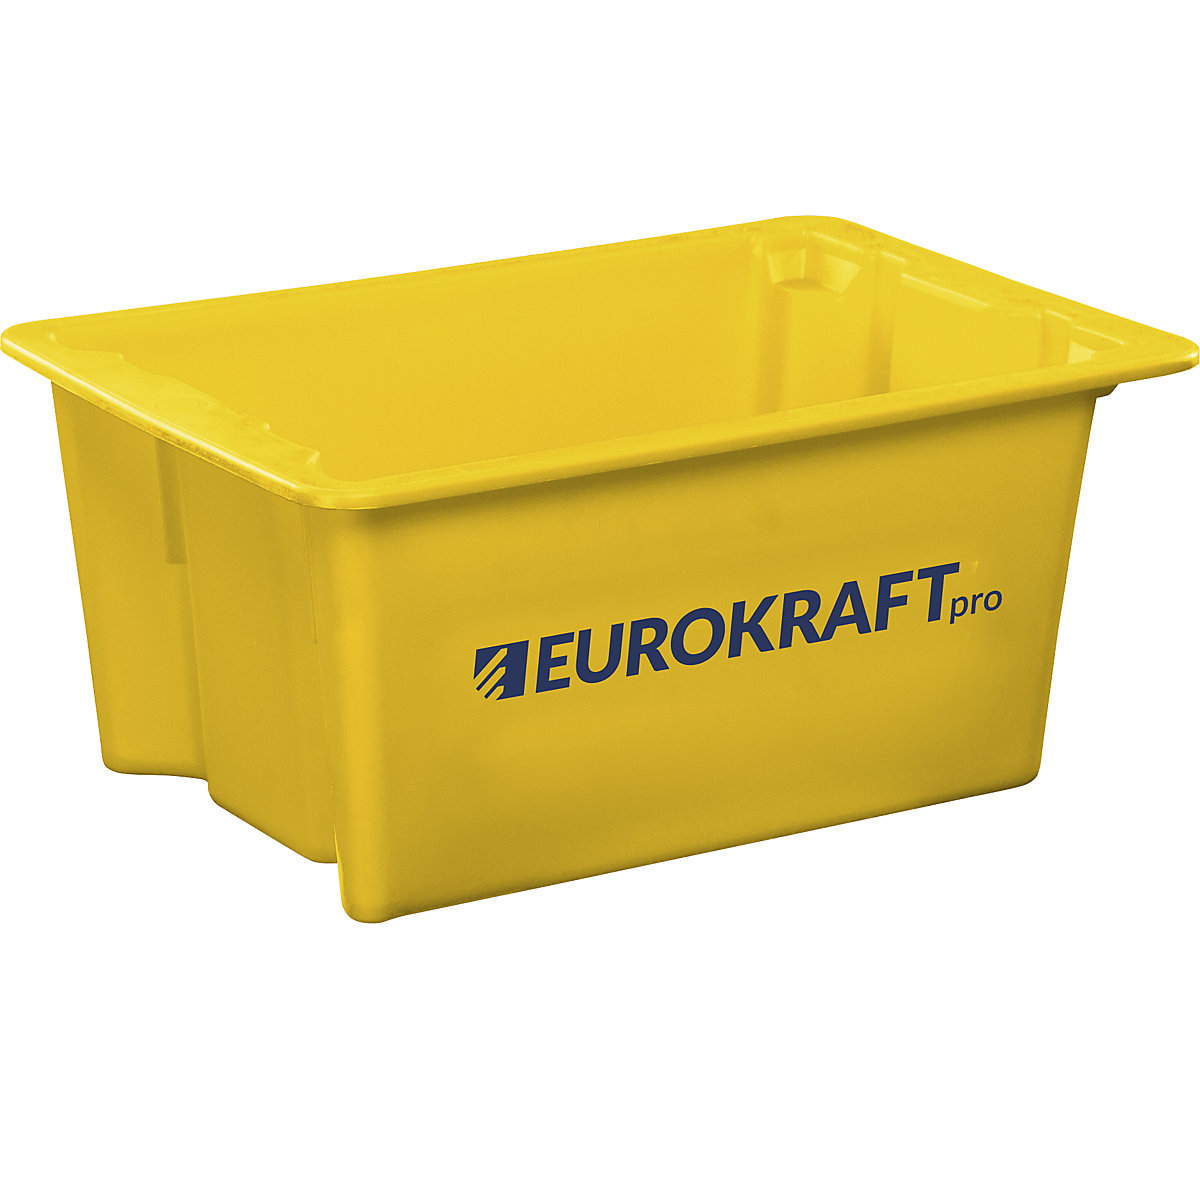 EUROKRAFTpro – Otočná stohovací nádoba z polypropylenu vhodného pro potraviny, obsah 6 litrů, bal.j. 4 ks, stěny a dno plné, žlutá